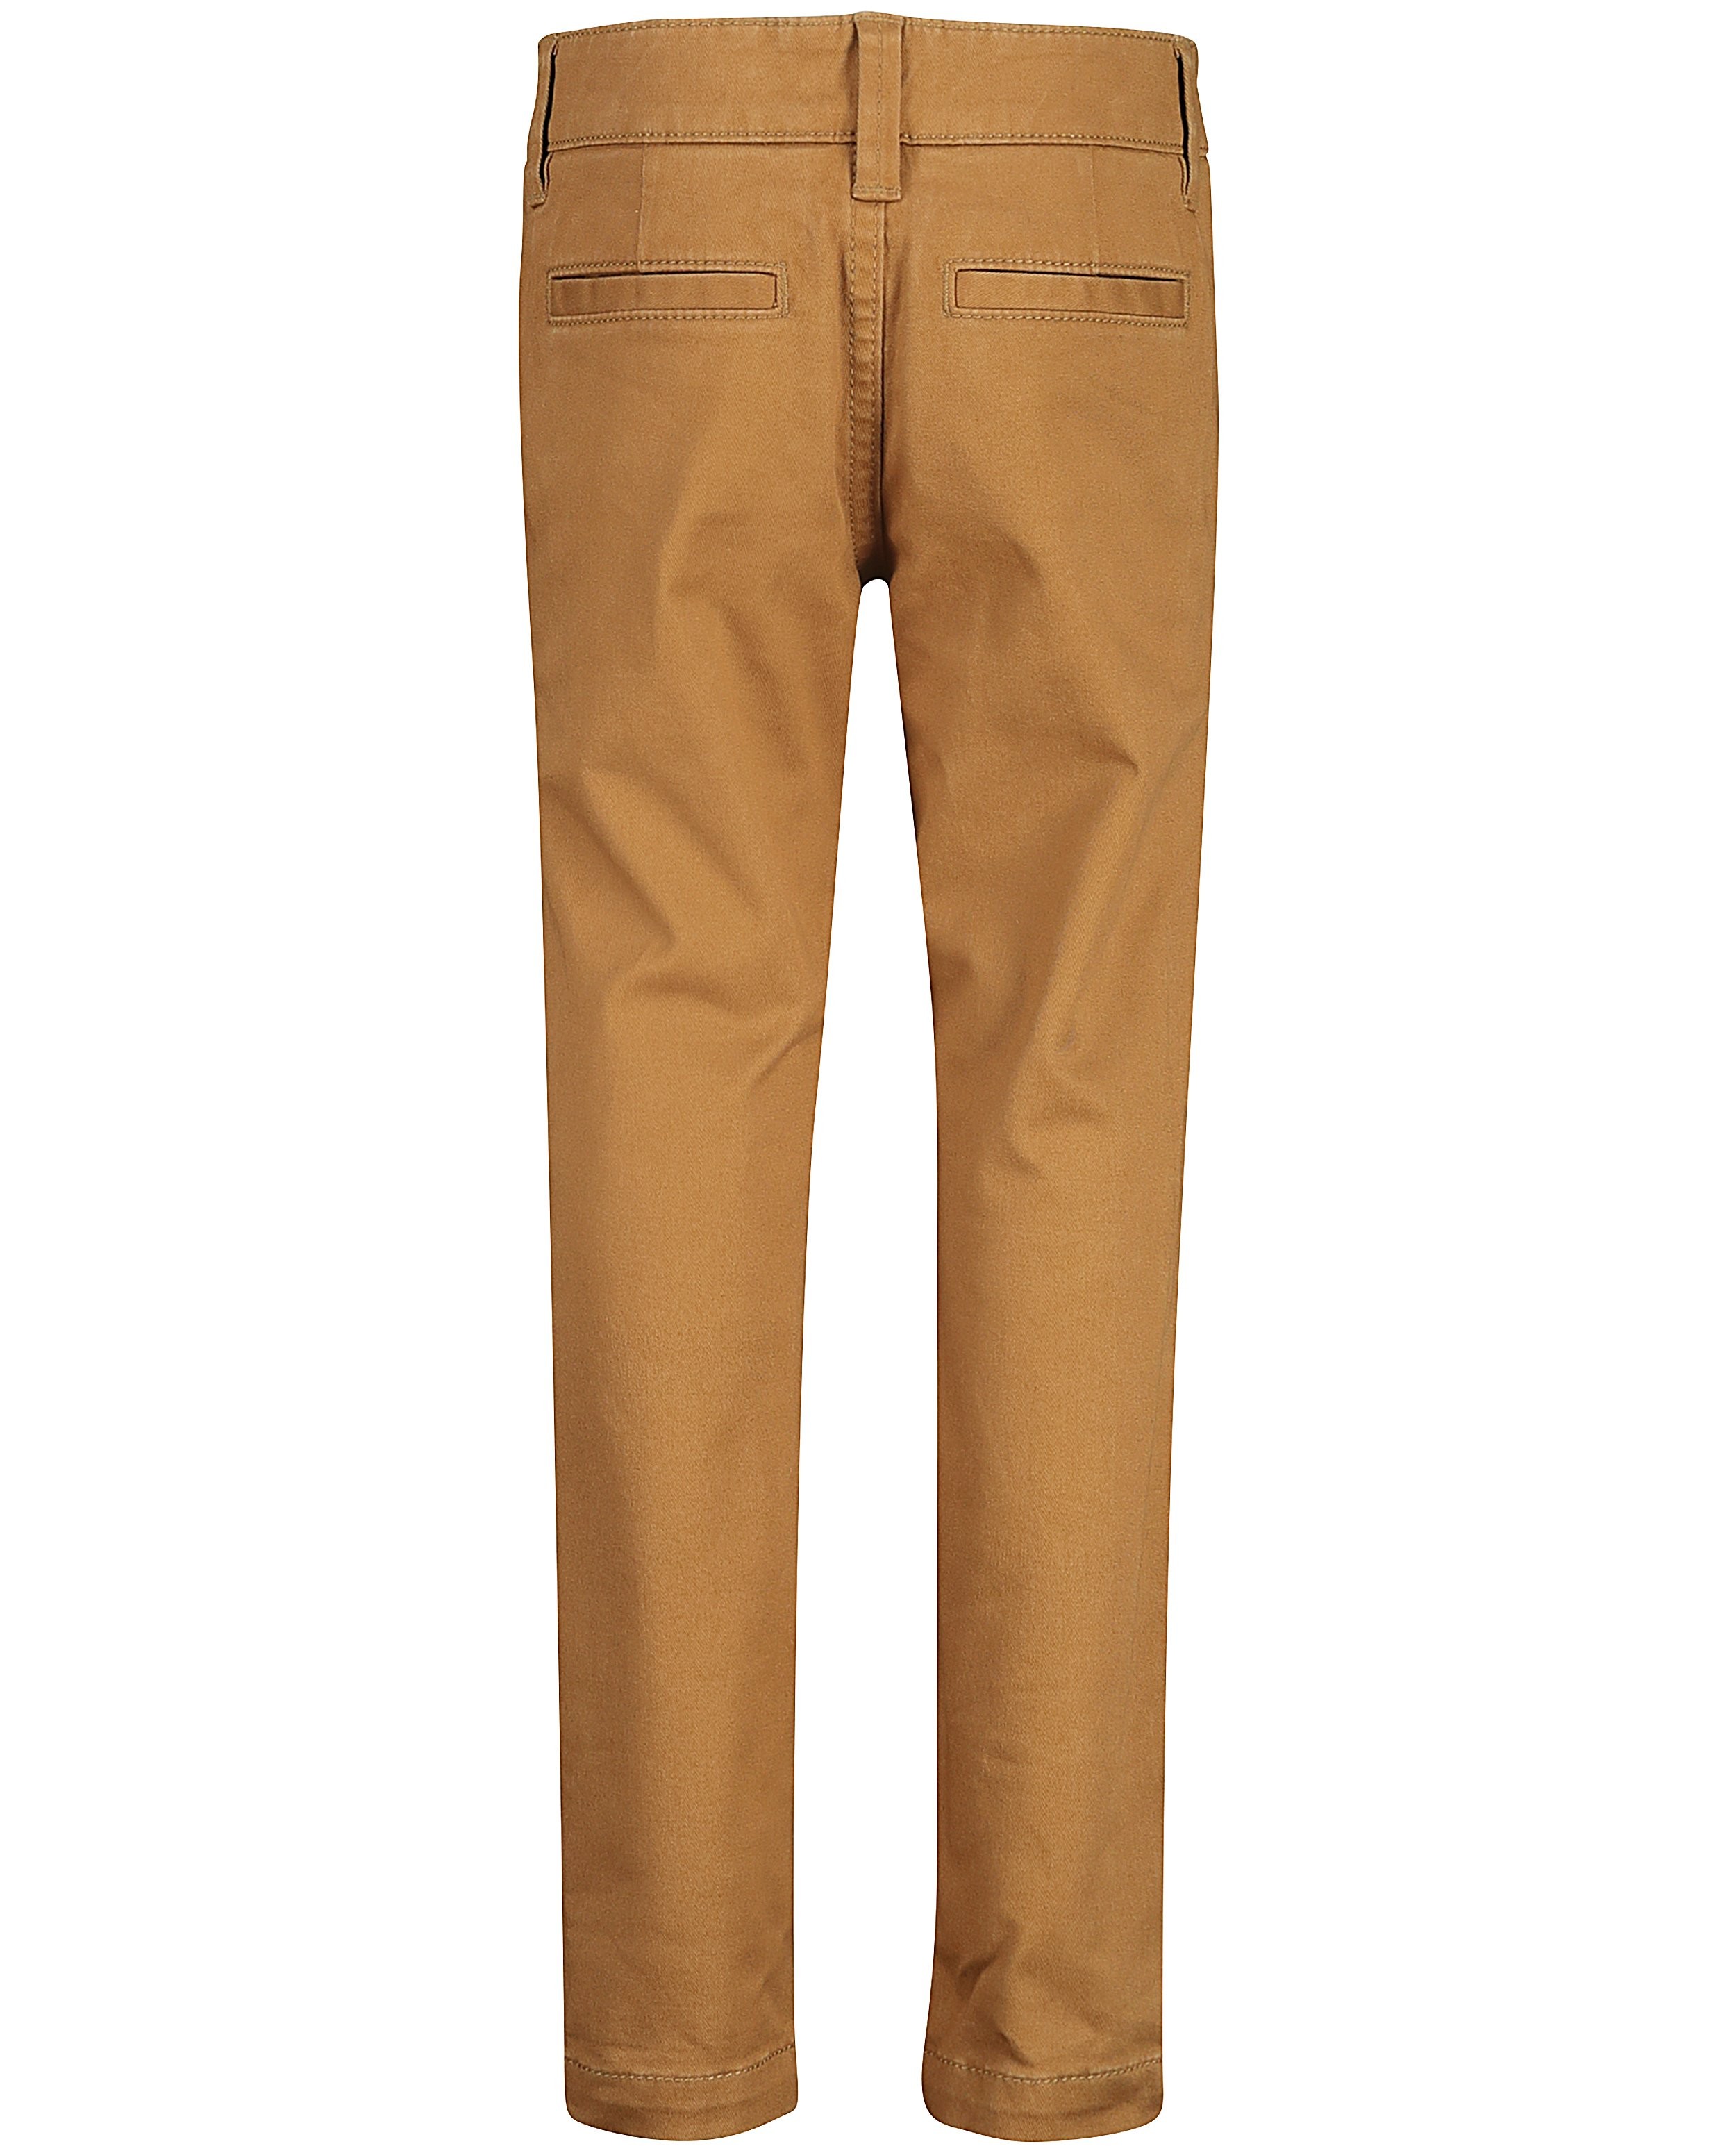 Pantalons - Skinny brun clair